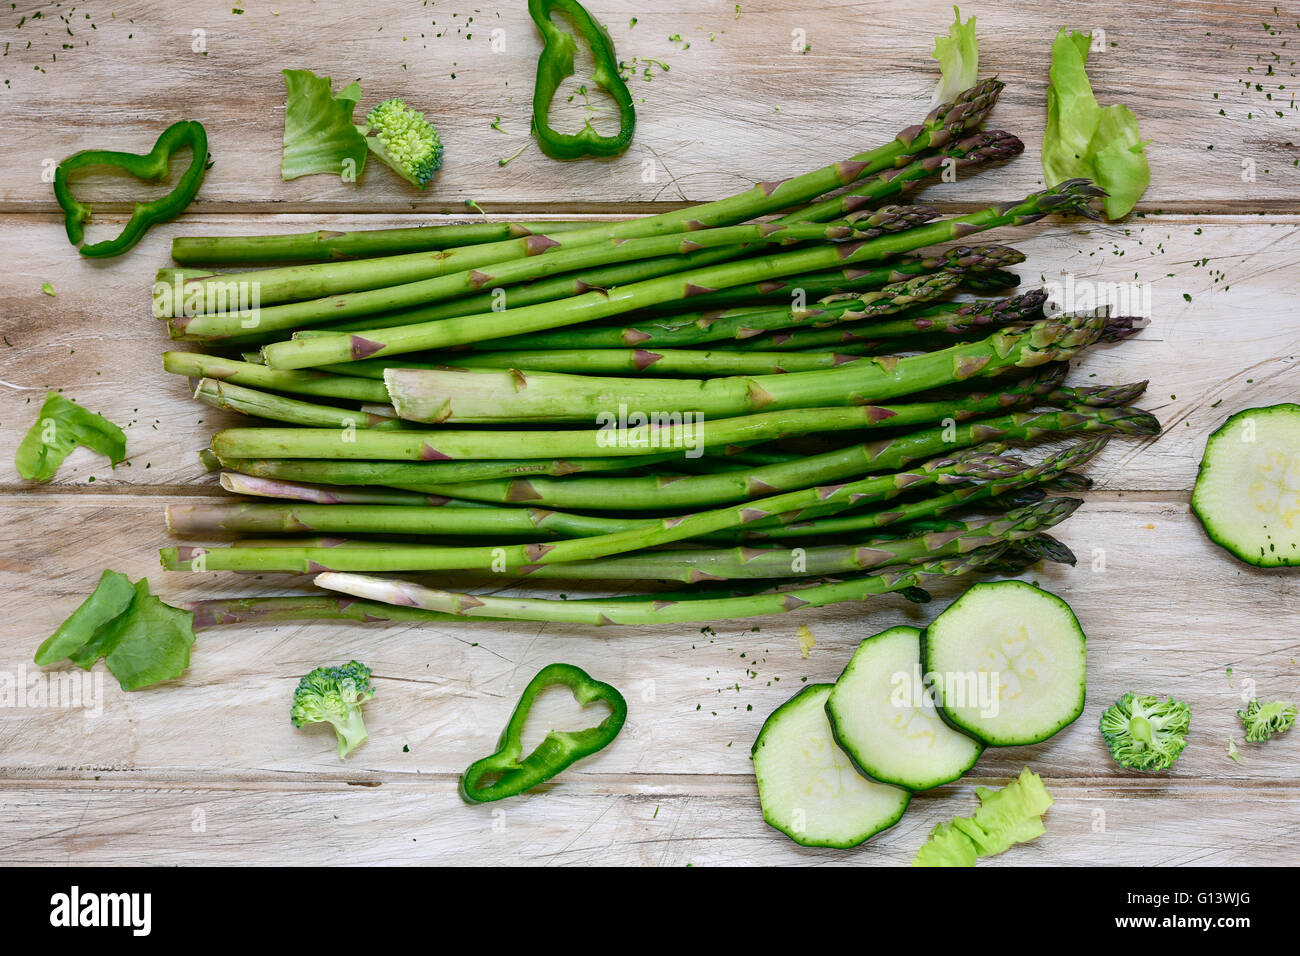 Alta angolazione di alcune diverse materie vegetali verdi come il pepe verde, asparagi, broccoli o le zucchine, su un bianco rustico Foto Stock